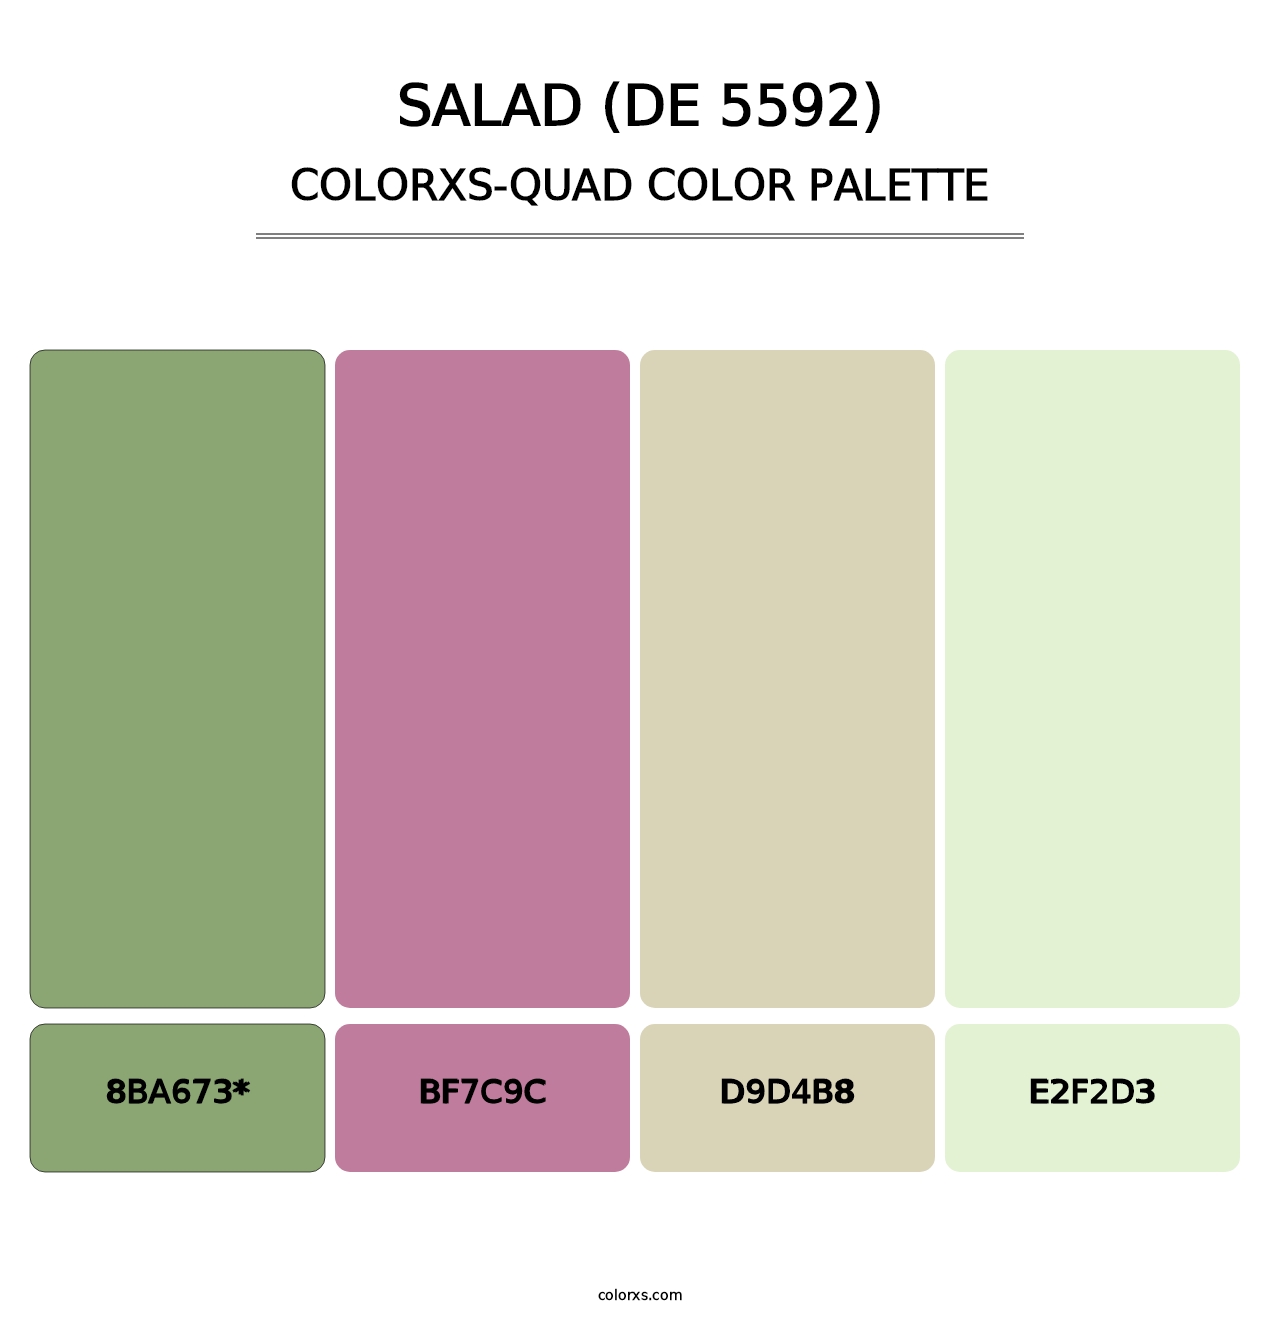 Salad (DE 5592) - Colorxs Quad Palette